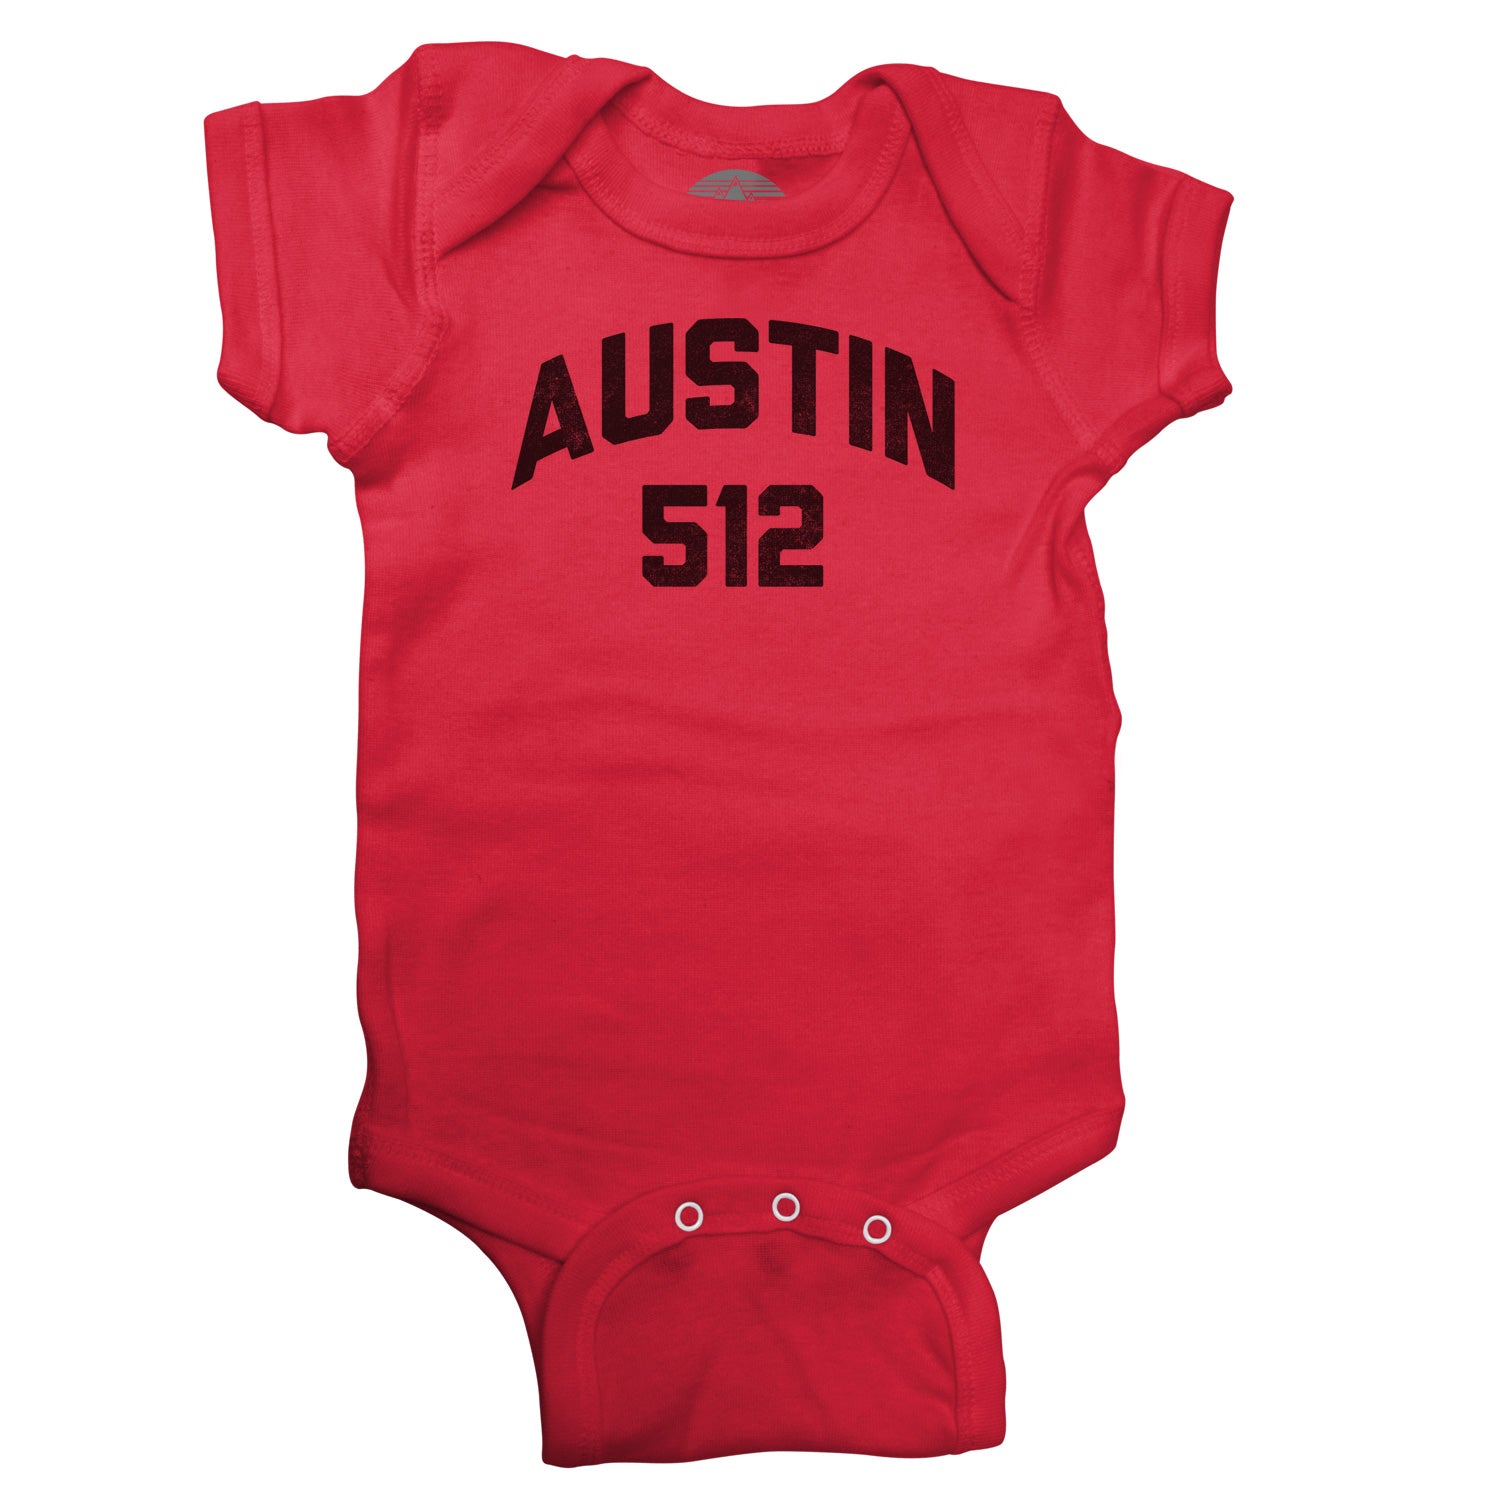 Austin 512 Area Code Infant Bodysuit - Unisex Fit